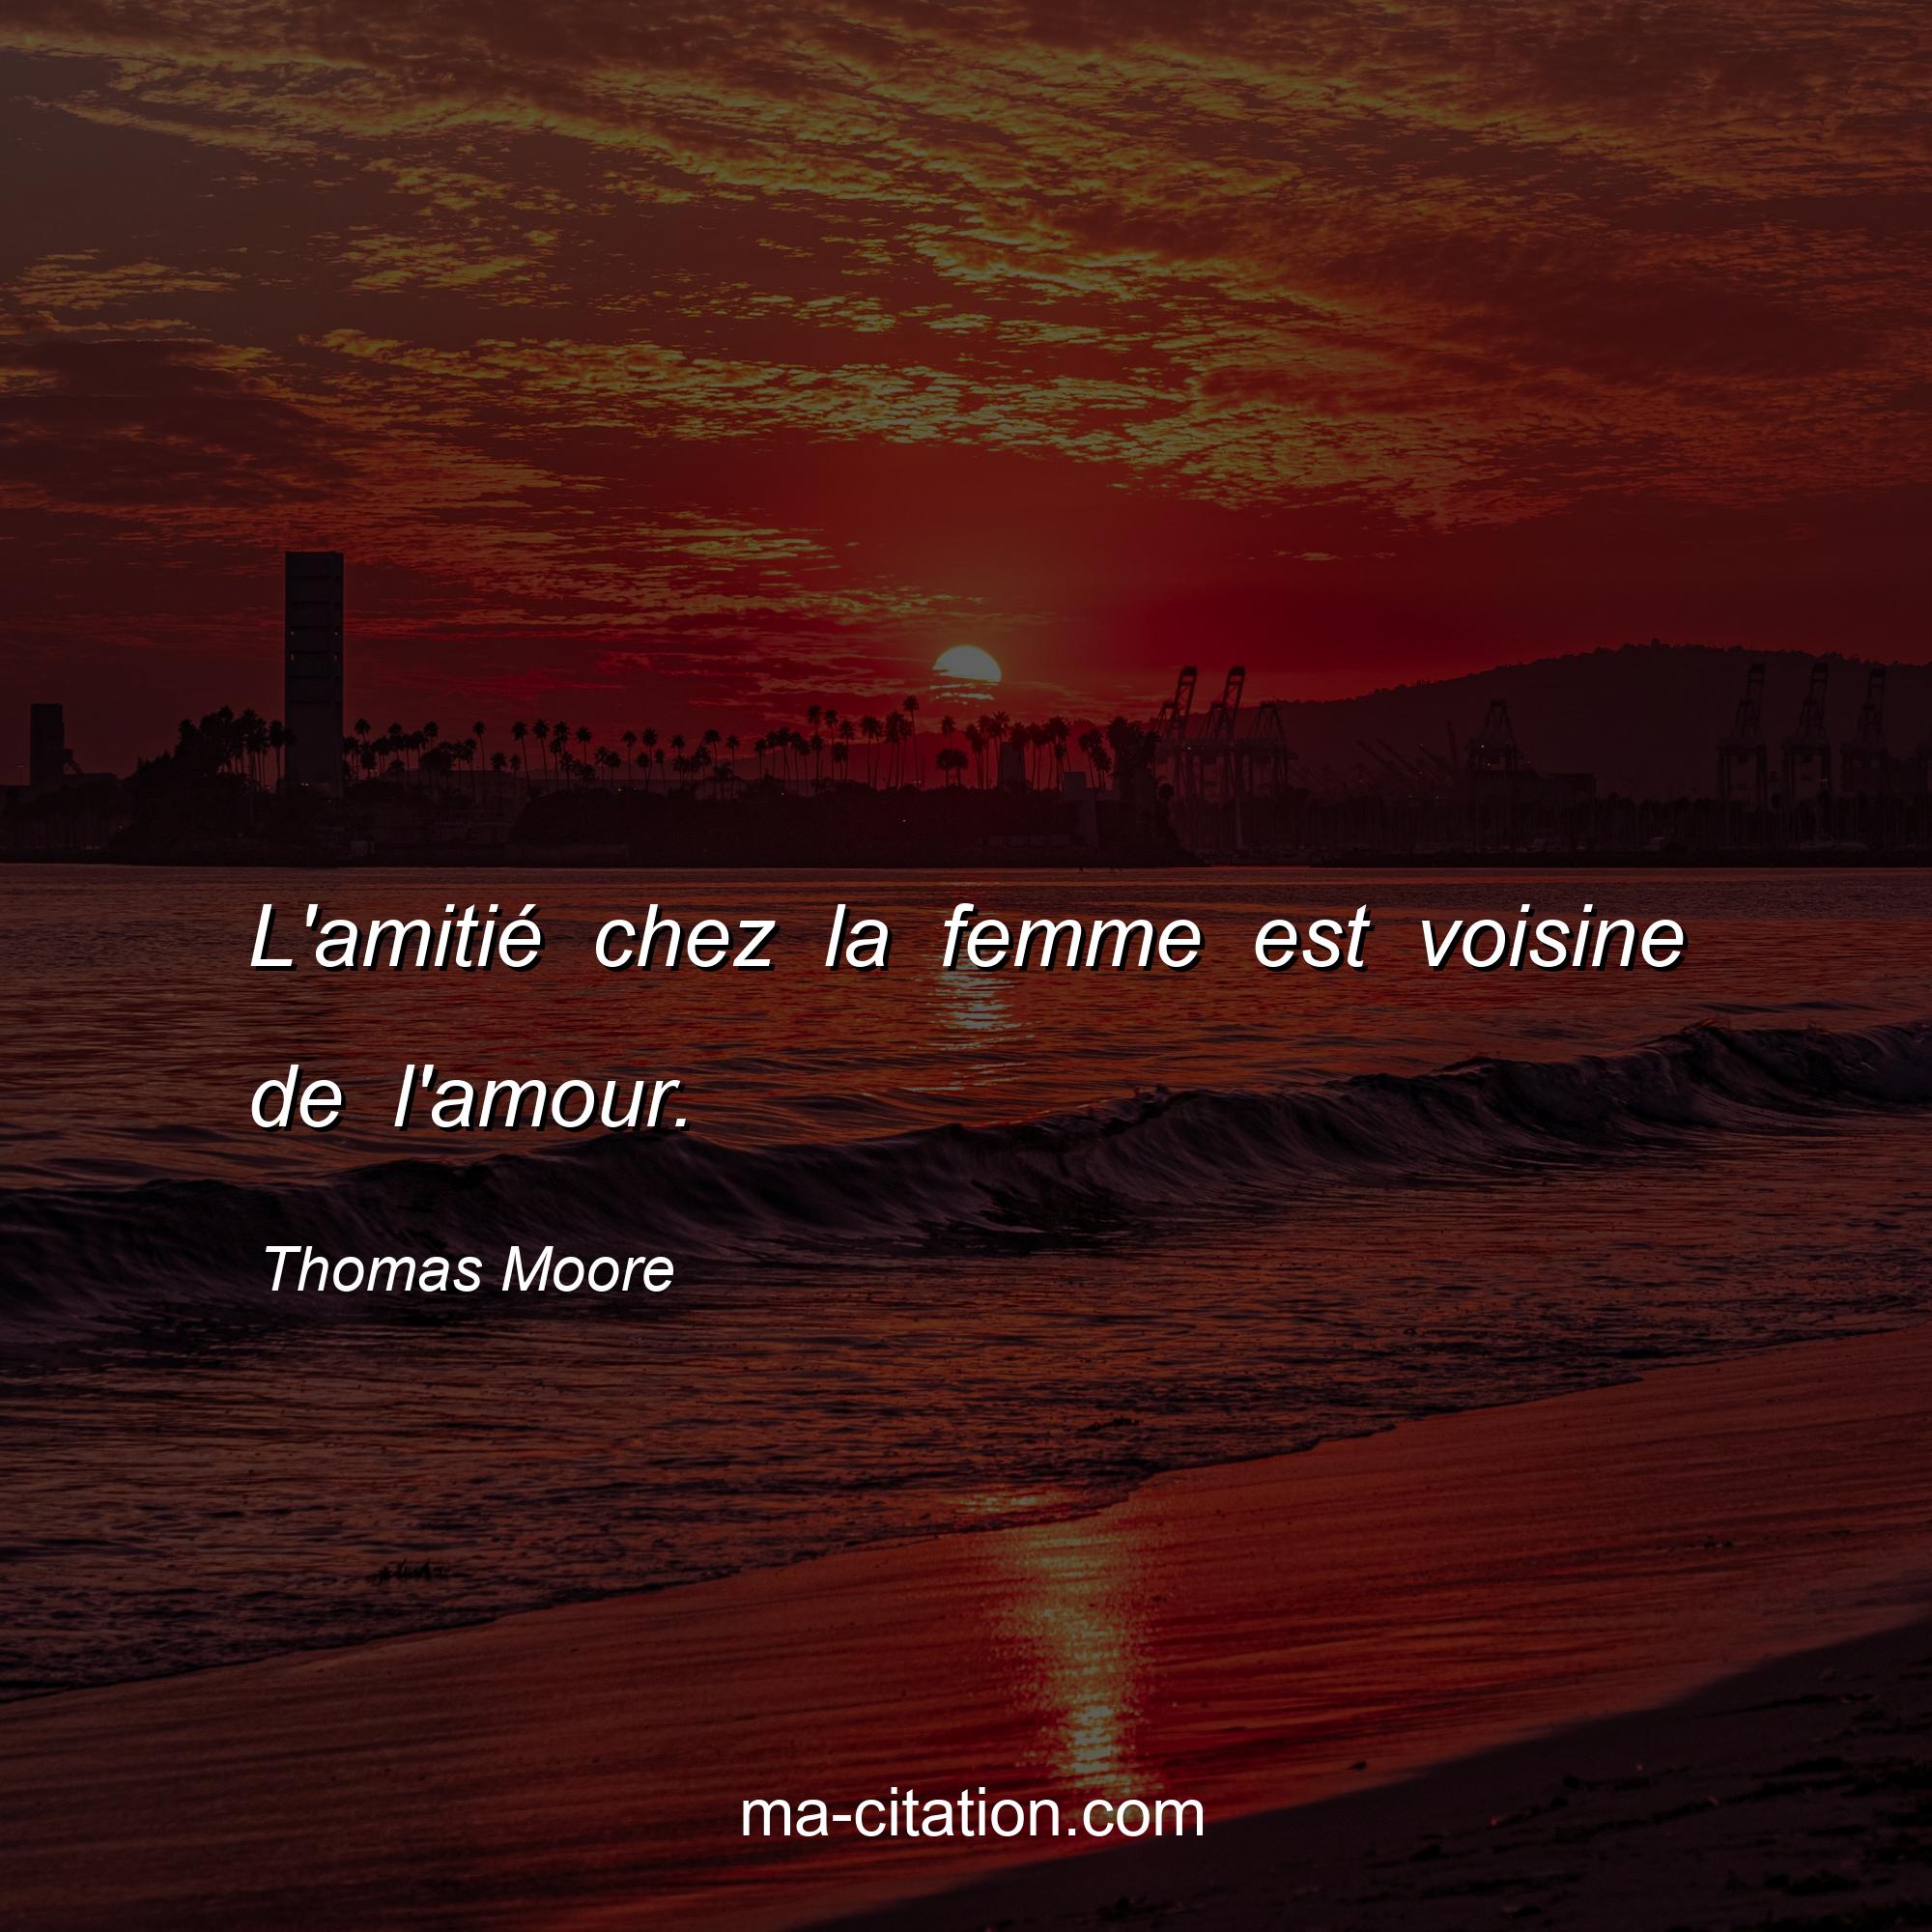 Thomas Moore : L'amitié chez la femme est voisine de l'amour.